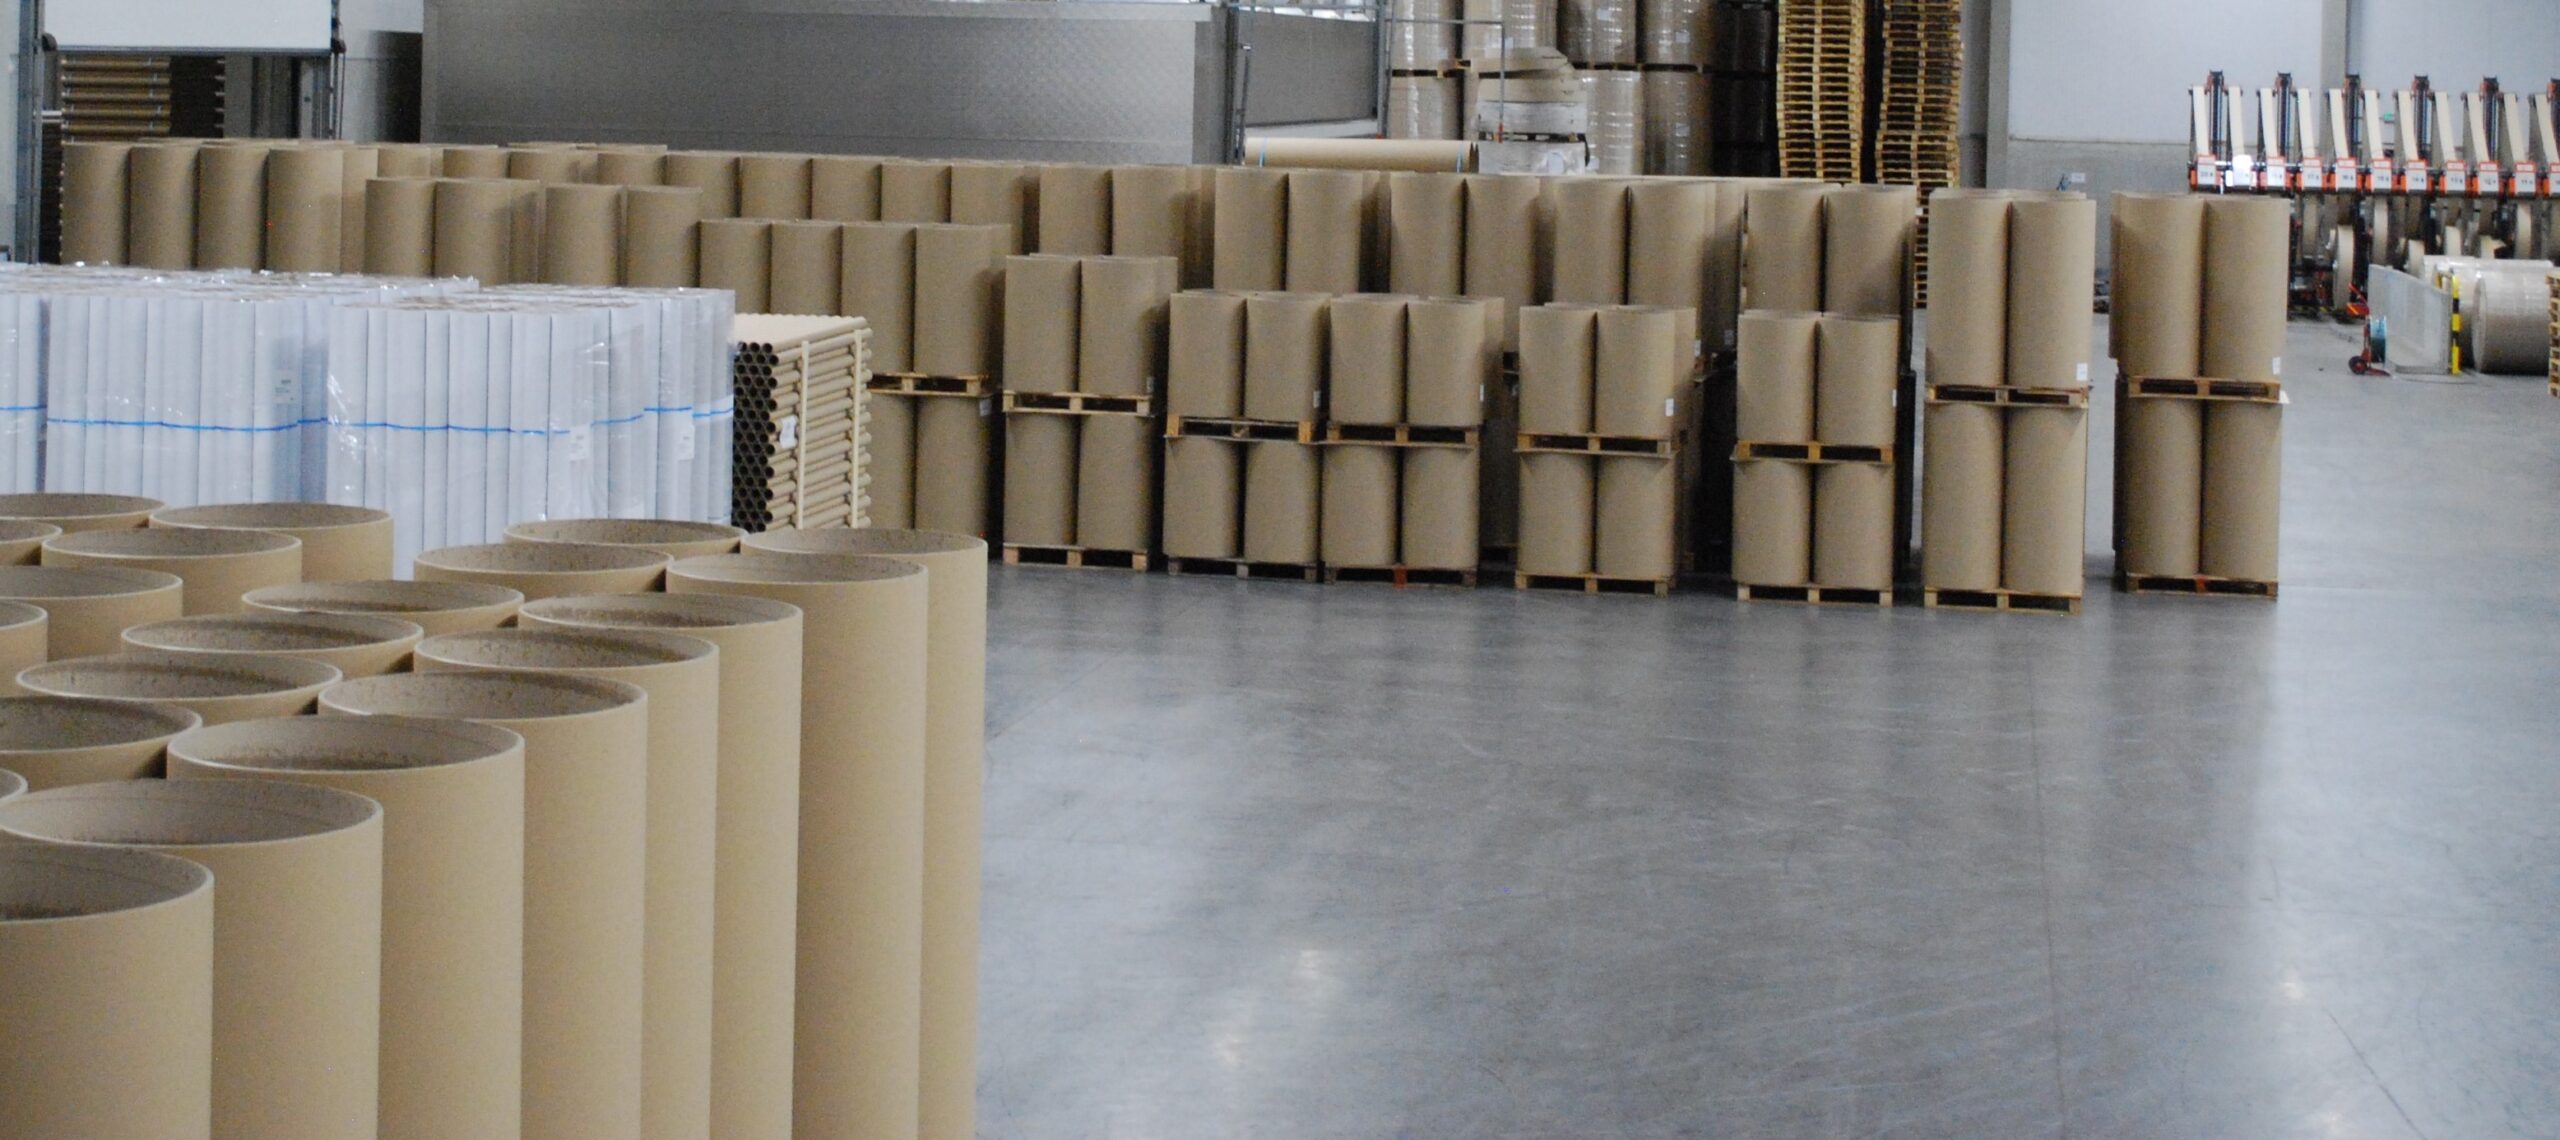 Kartonnage Joye est fabricant de mandrins et cornières carton.